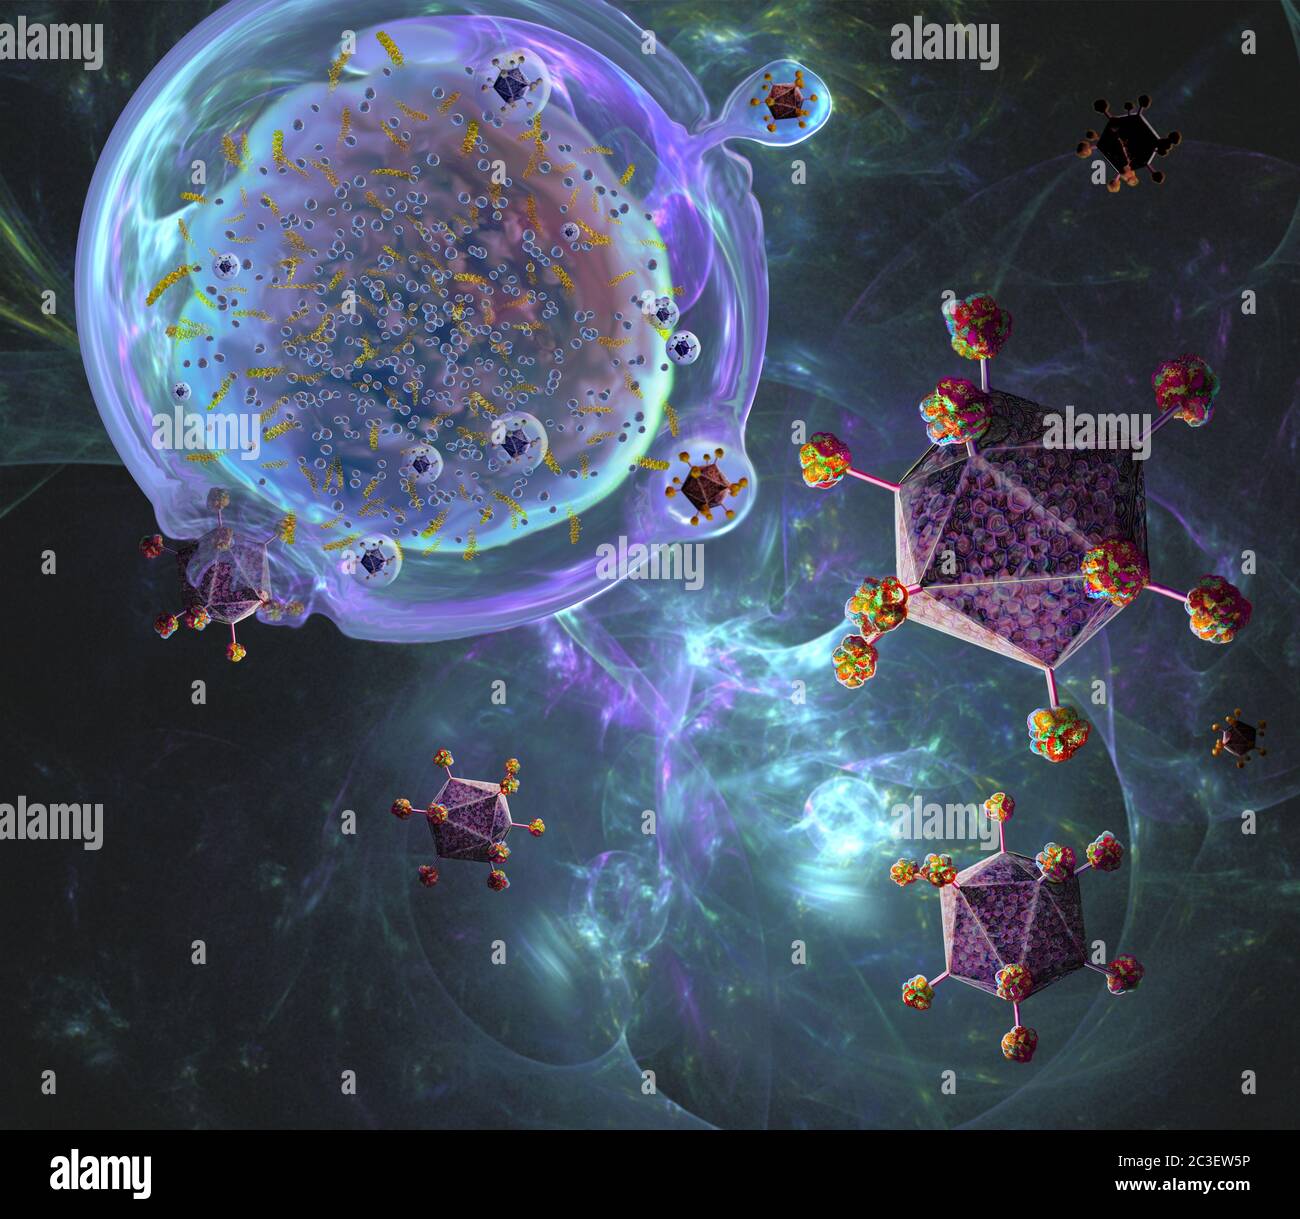 Illustration der CAR (chimären Antigen-Rezeptor) T-Zell-Immuntherapie, ein Prozess, der zur Behandlung von Krebs entwickelt wird. T-Zellen (eine oben links), Teil des körpereigenen Immunsystems, werden dem Patienten entnommen und lassen seine DNA (Desoxyribonukleinsäure) durch Viren (lila) modifizieren, so dass sie chimäre Antigenrezeptor-(CAR-)Proteine produzieren. Diese Proteine sind spezifisch für den Krebs des Patienten. Die modifizierten T-Zellen werden dann im Labor vervielfältigt, bevor sie wieder dem Patienten zugesetzt werden. Stockfoto